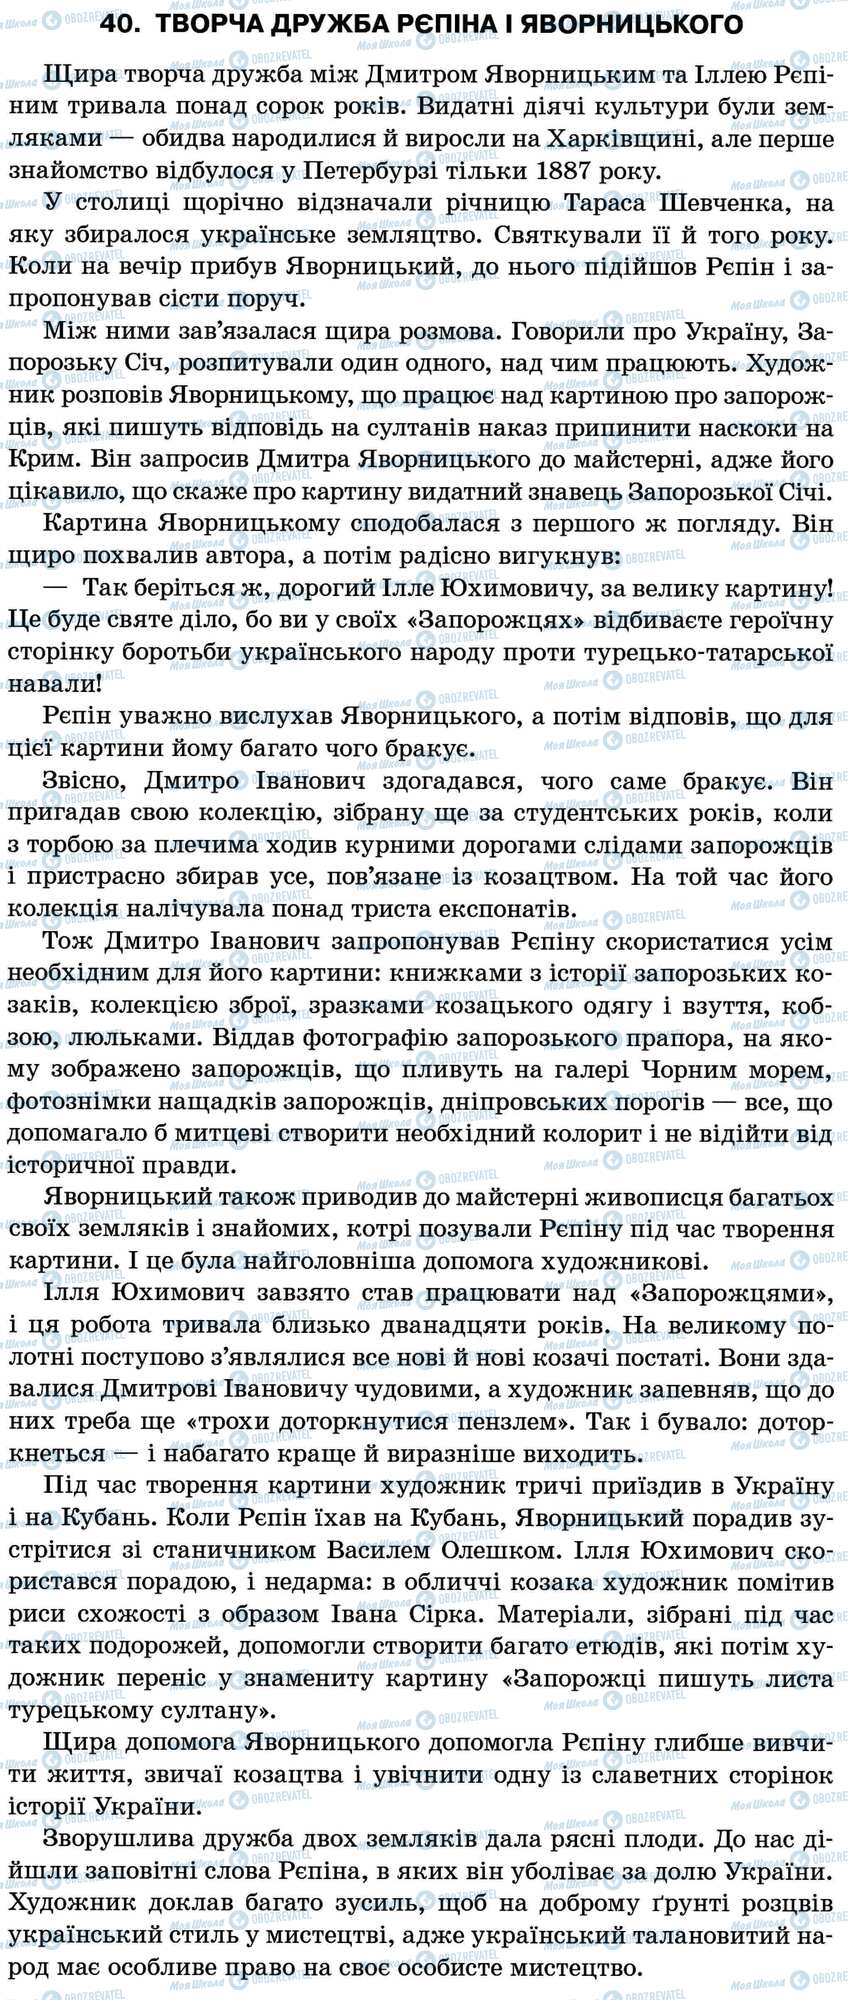 ДПА Укр мова 11 класс страница 40. Творча дружба Рєпіна і Яворницького